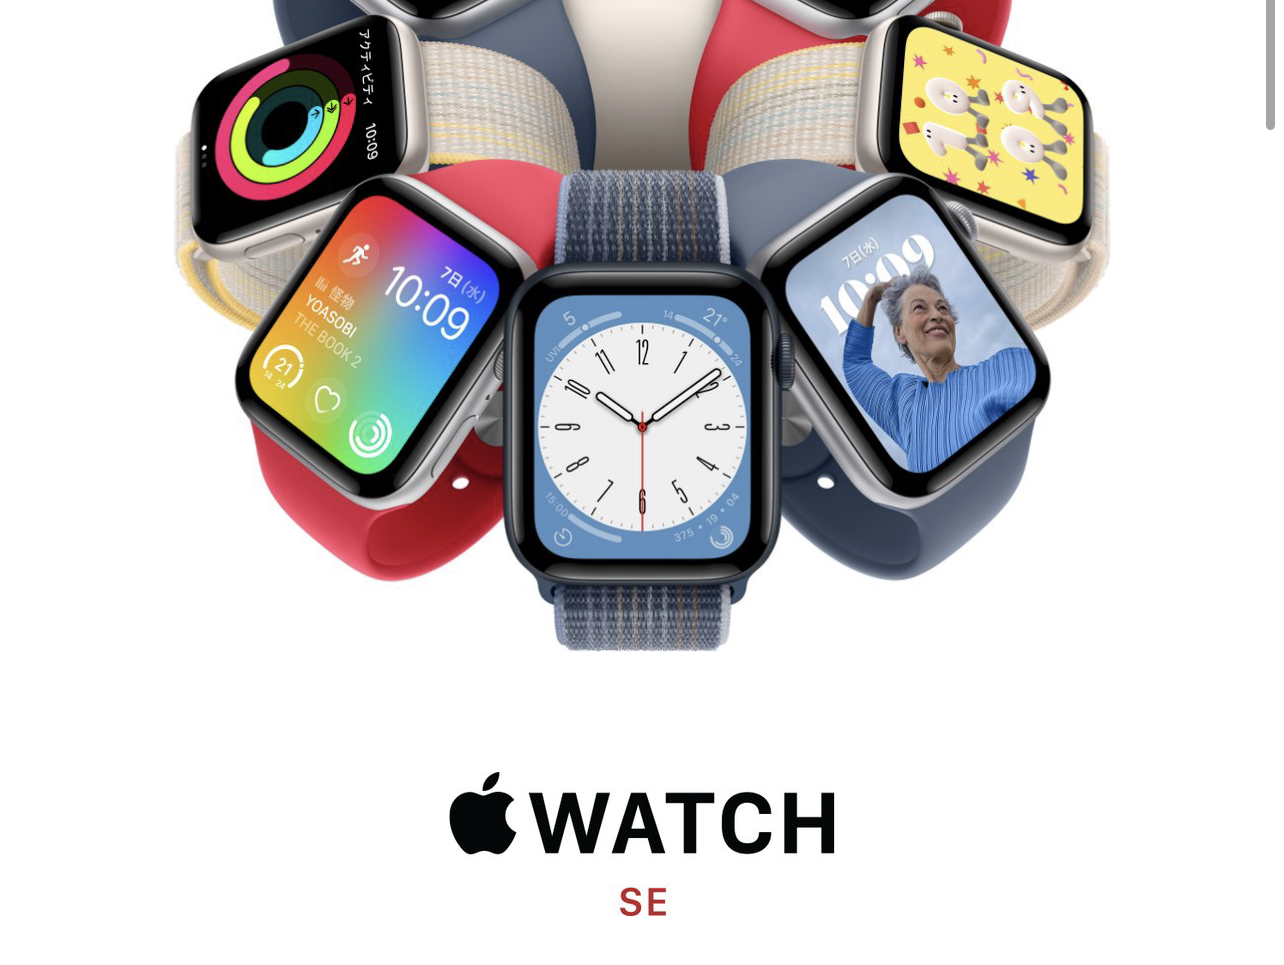 Apple Watchの新型SE 2がAmazonで予約開始。コスパ最強でおすすめ 